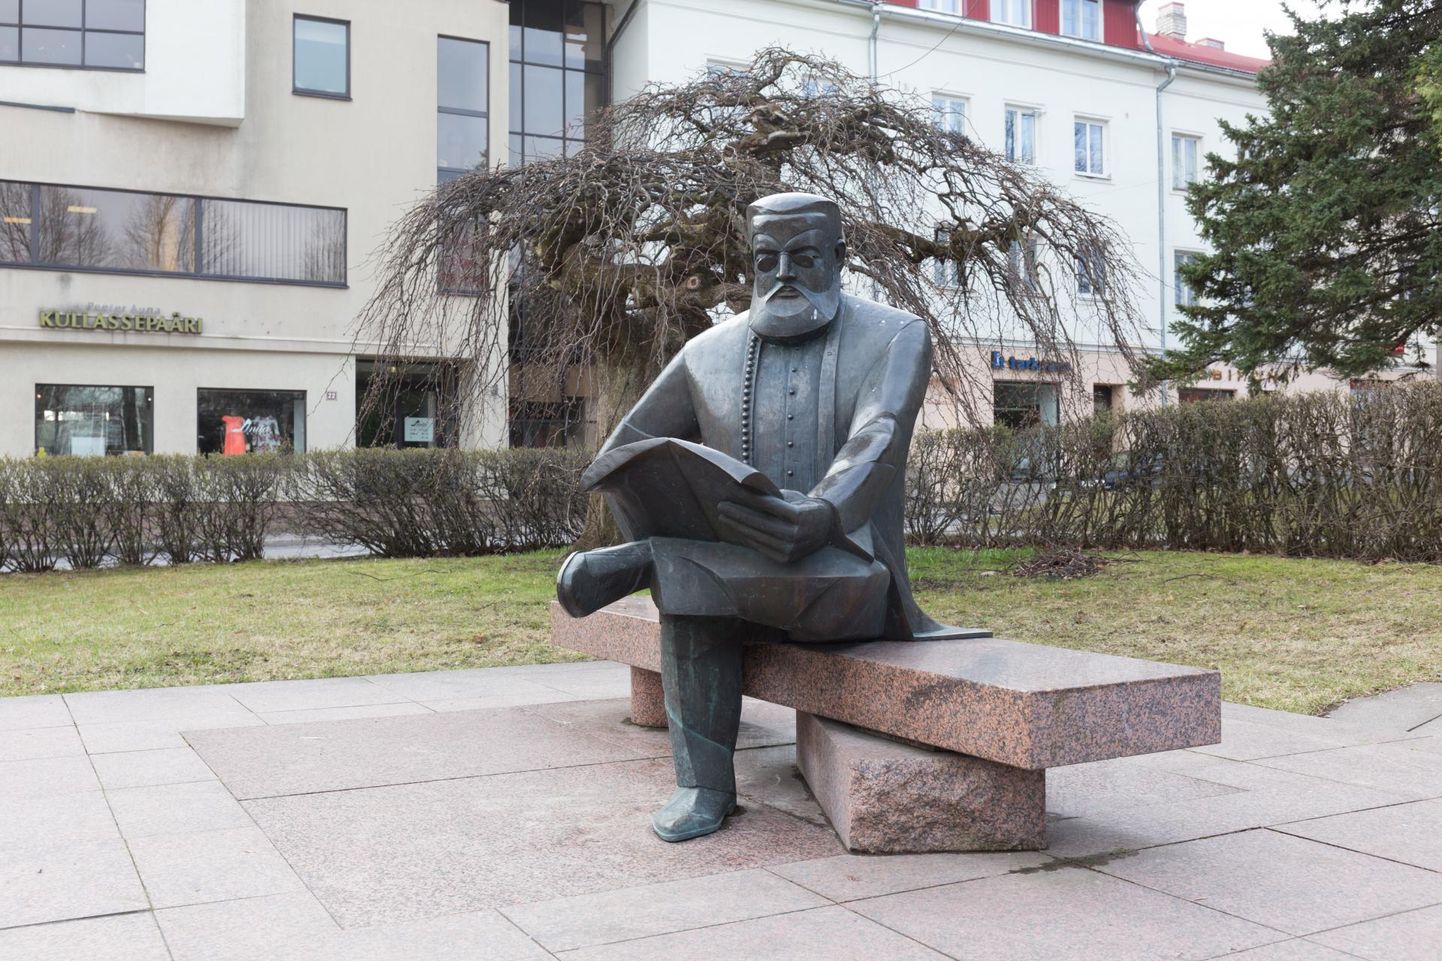 Üheksa aastat pärast esimest üldlaulupidu, aastal 1878 asutas Carl Robert Jakobson (1841–1882) Viljandis ajalehe Sakala. Aastal 1998 avati Viljandi kesklinnas tema skulptuur, mille on kavandanud kujur Mati Karmin ja arhitekt Tiit Trummal.